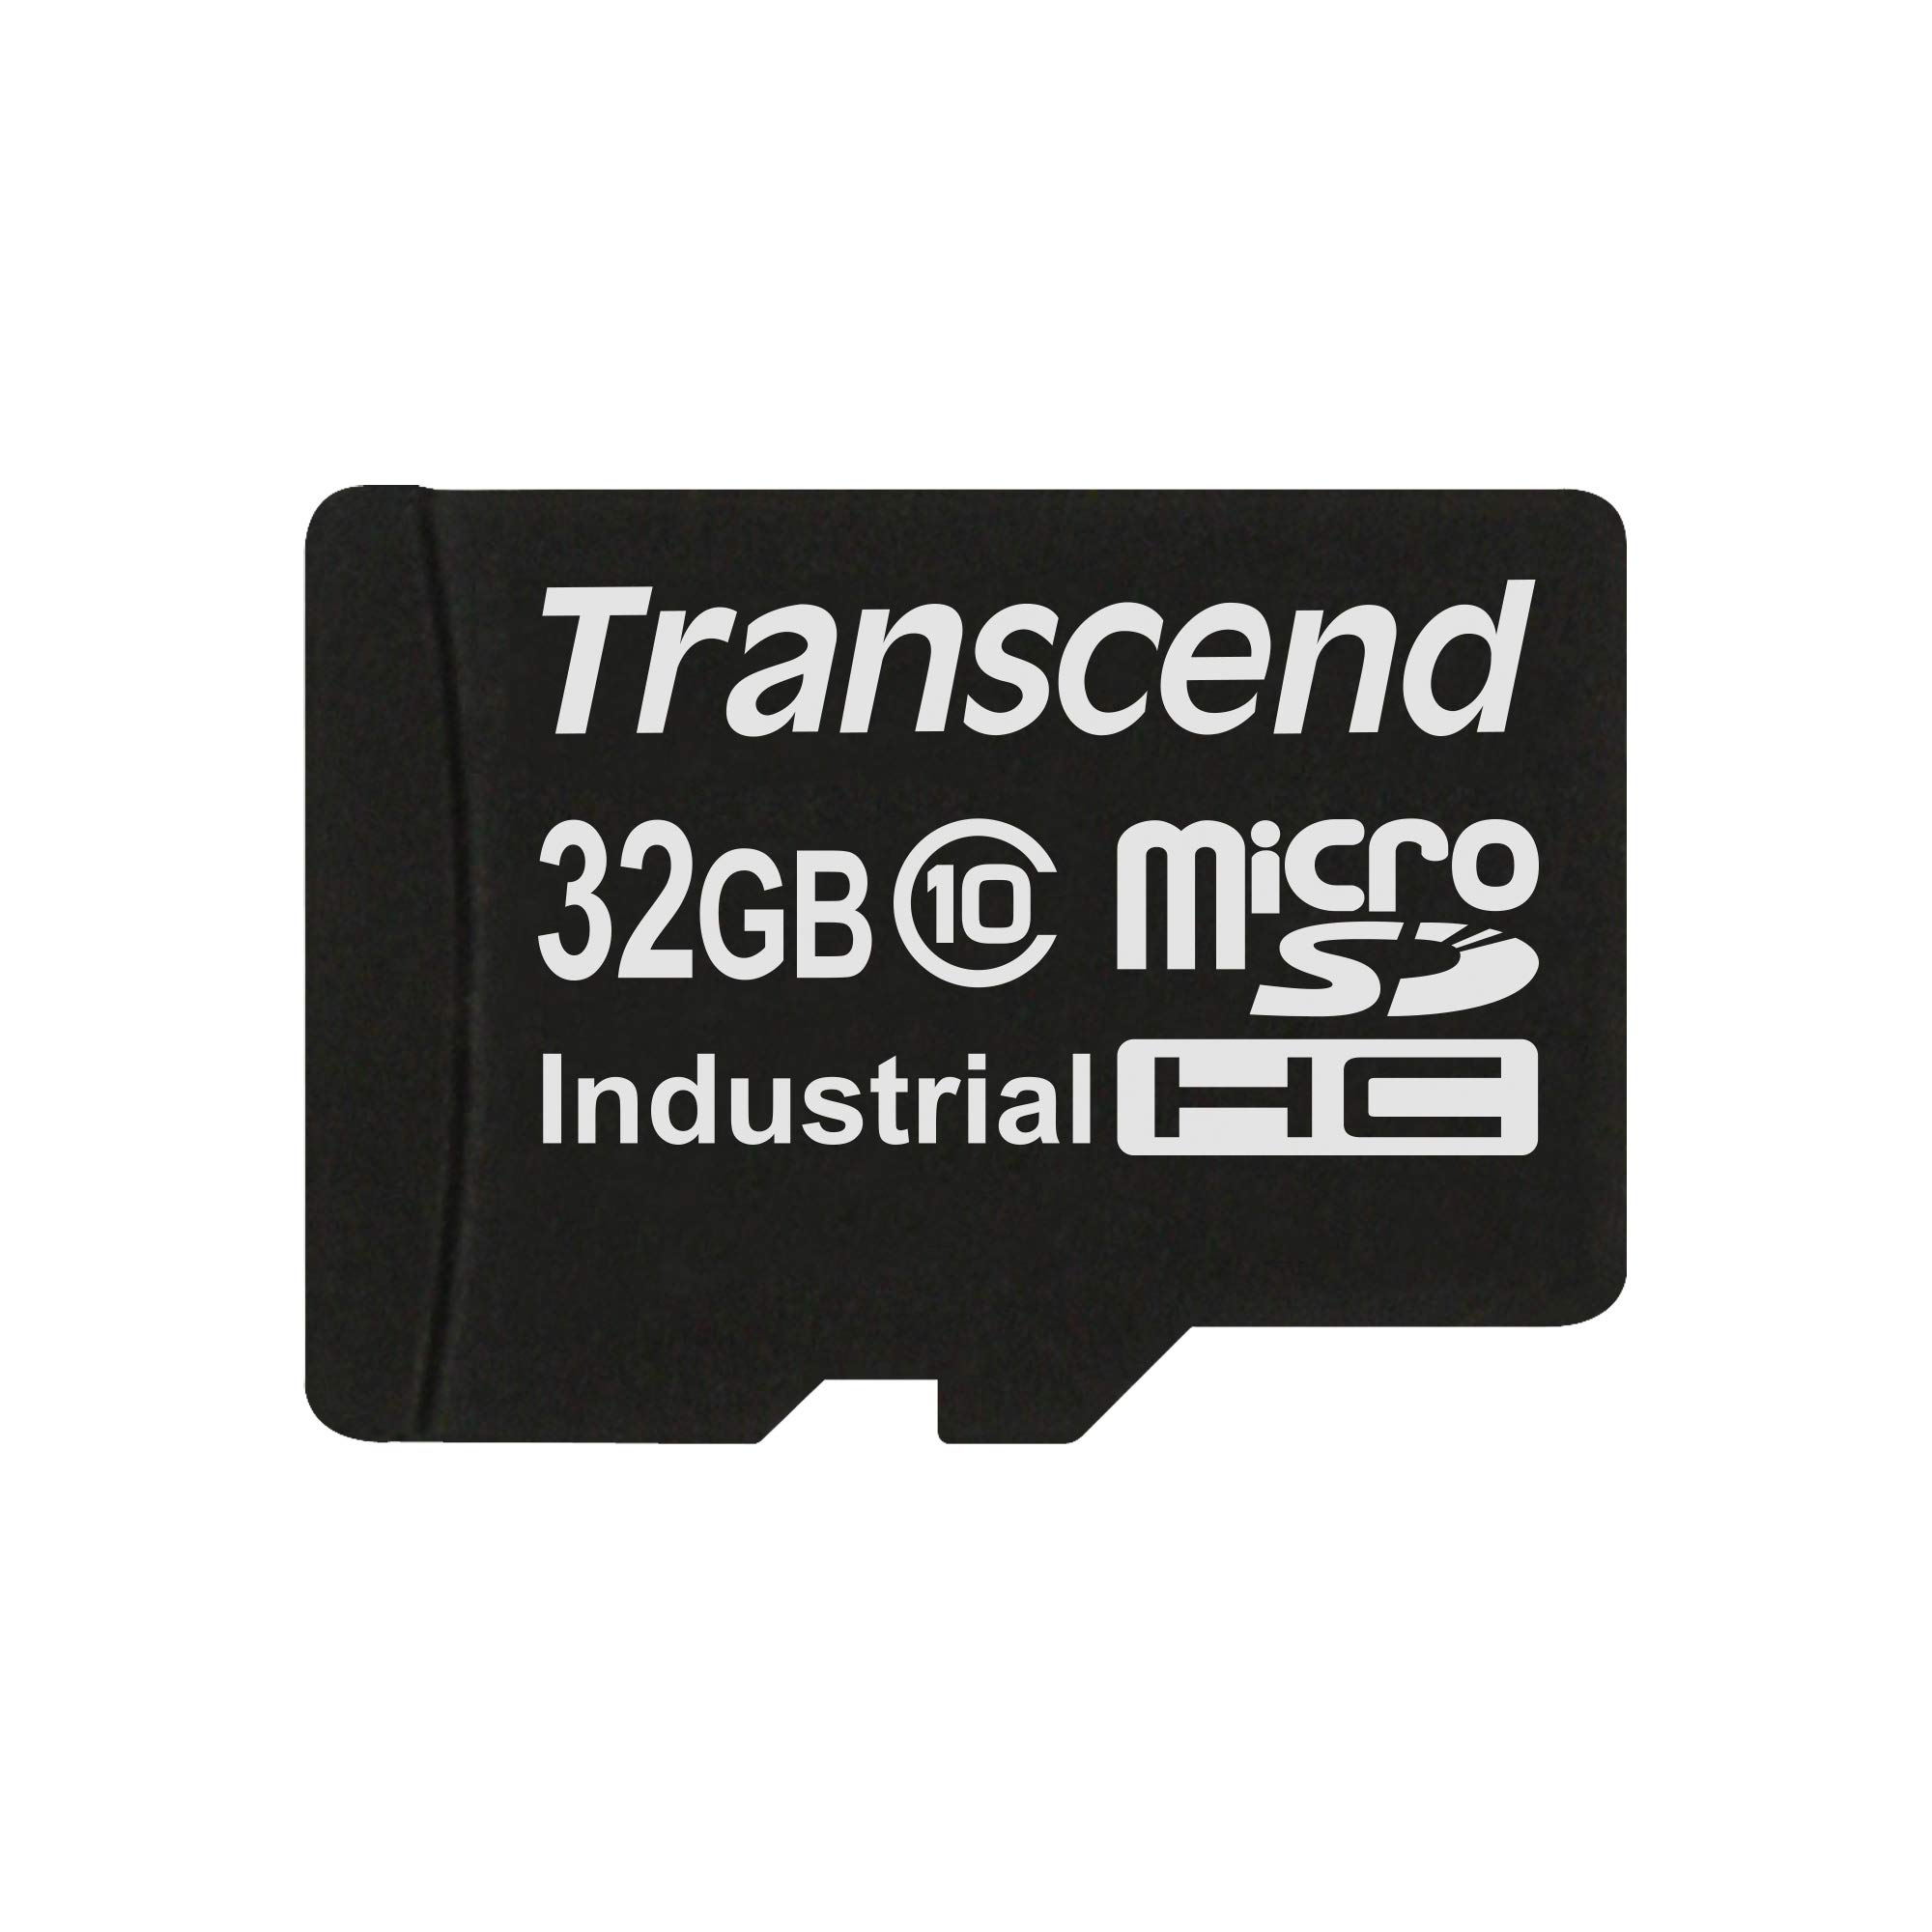 トランセンドジャパン 業務用/産業用 組込向け microSDHCカード 32GB Class10 2D MLC NAND採用 高耐久 温度拡張品 動作環境温度-40°C以